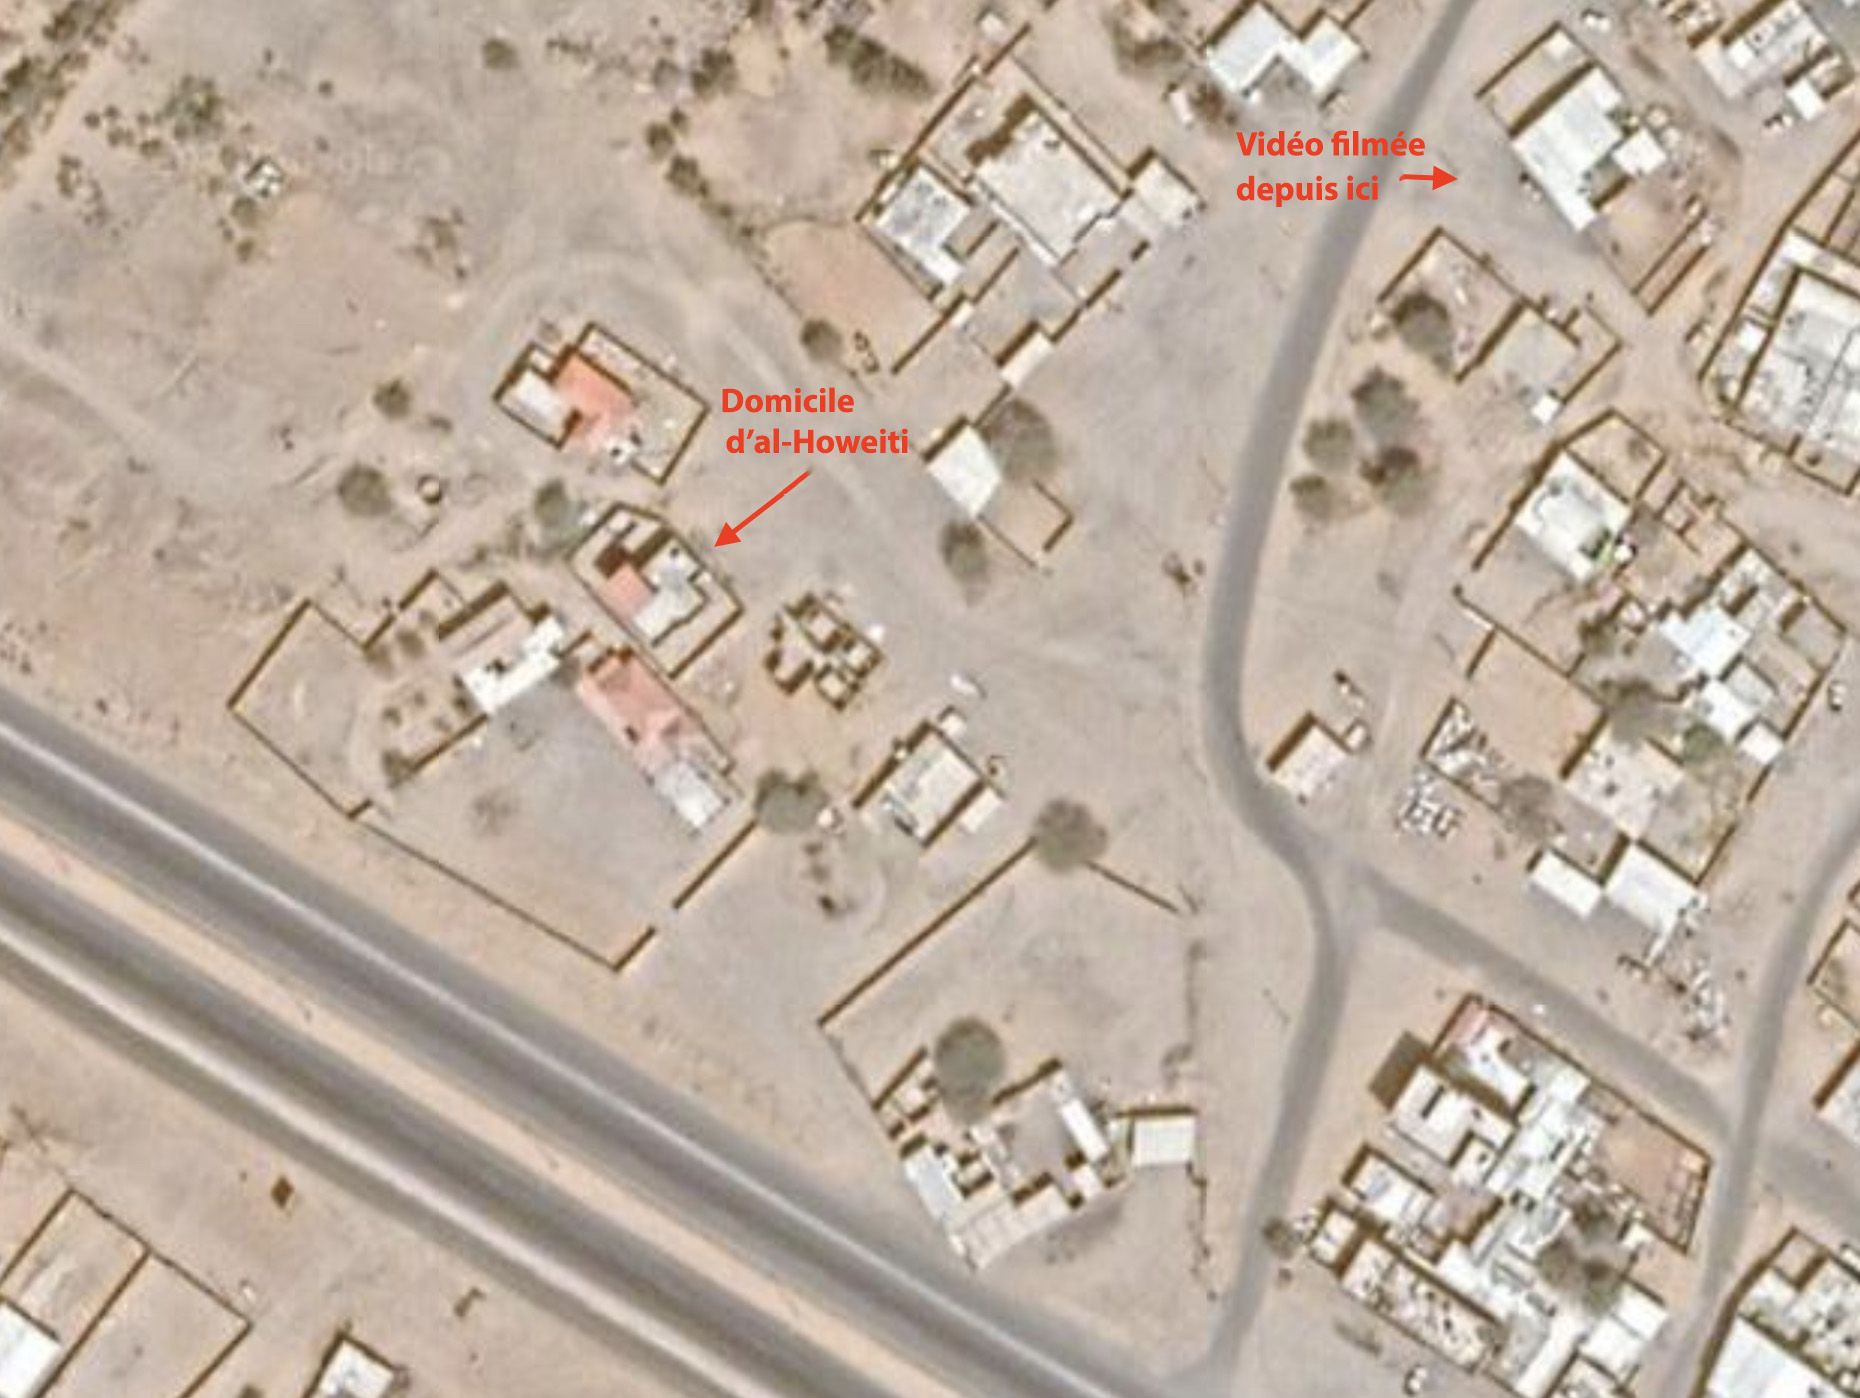 La géolocalisation de la zone montre le domicile d’al-Howeiti et l’endroit d’où a été filmée la fusillade (Google Maps)